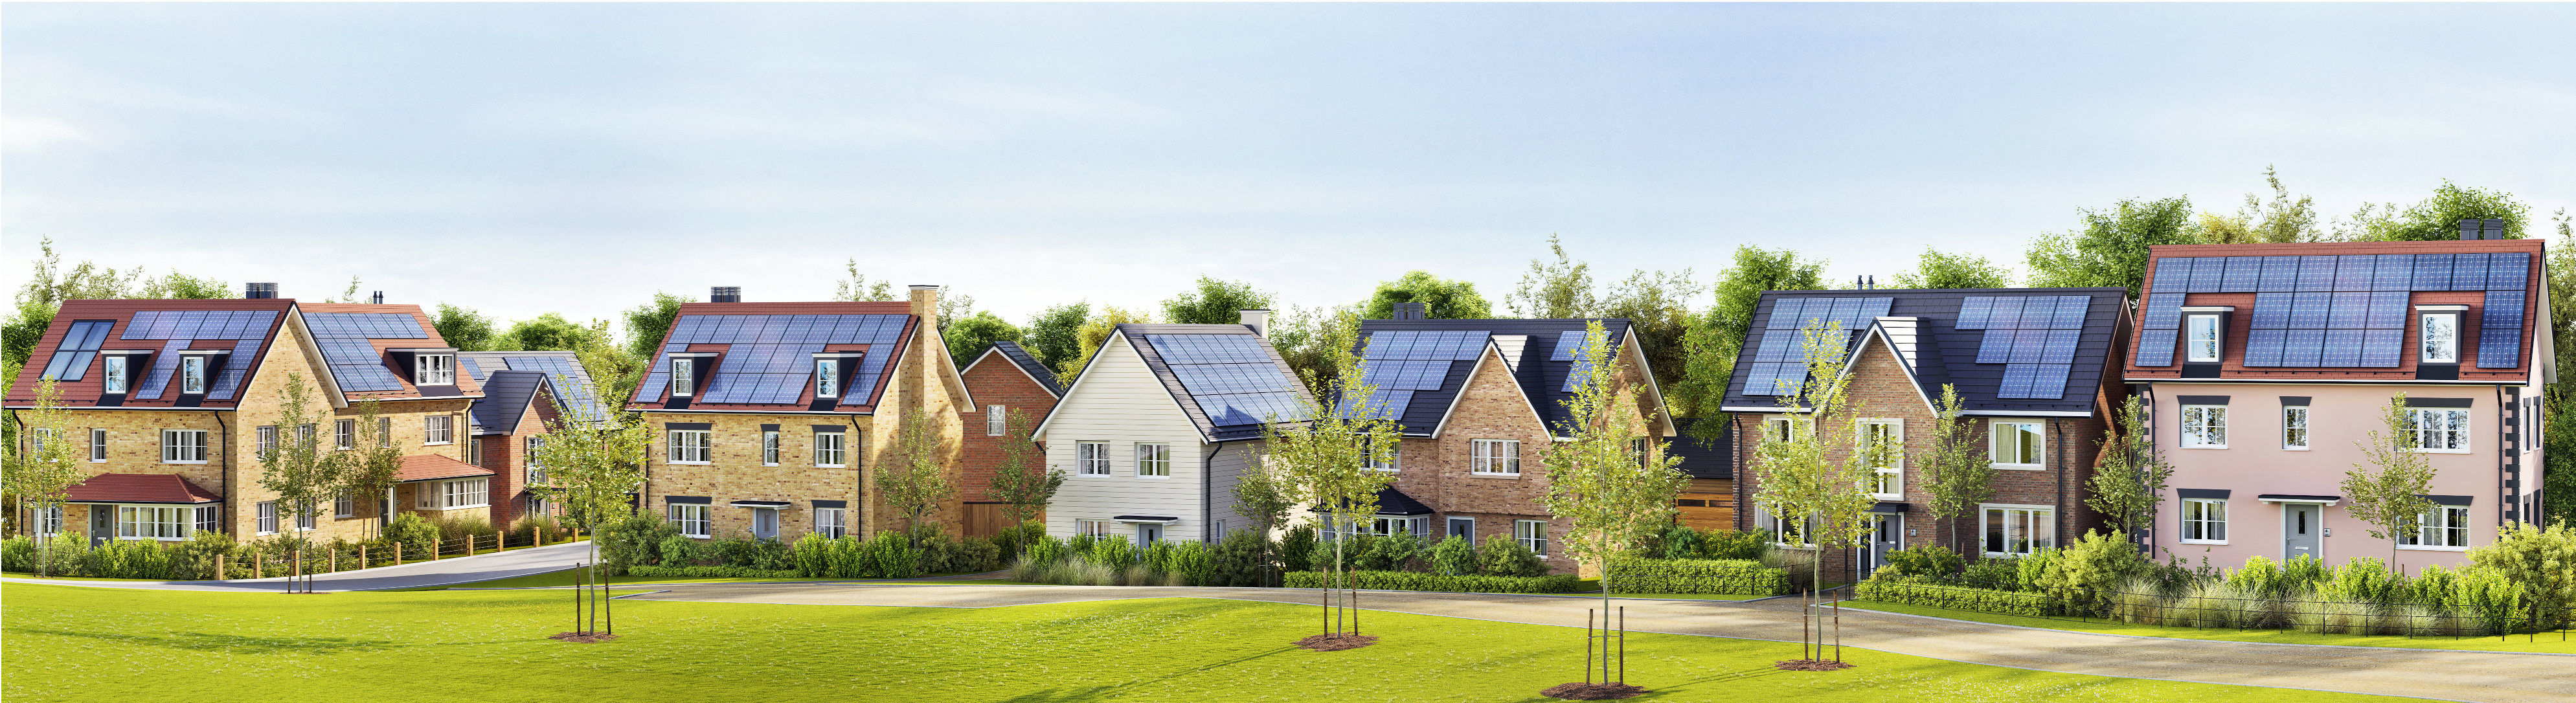 Bild von Häusern mit Photovoltaikanlagen auf dem Dach